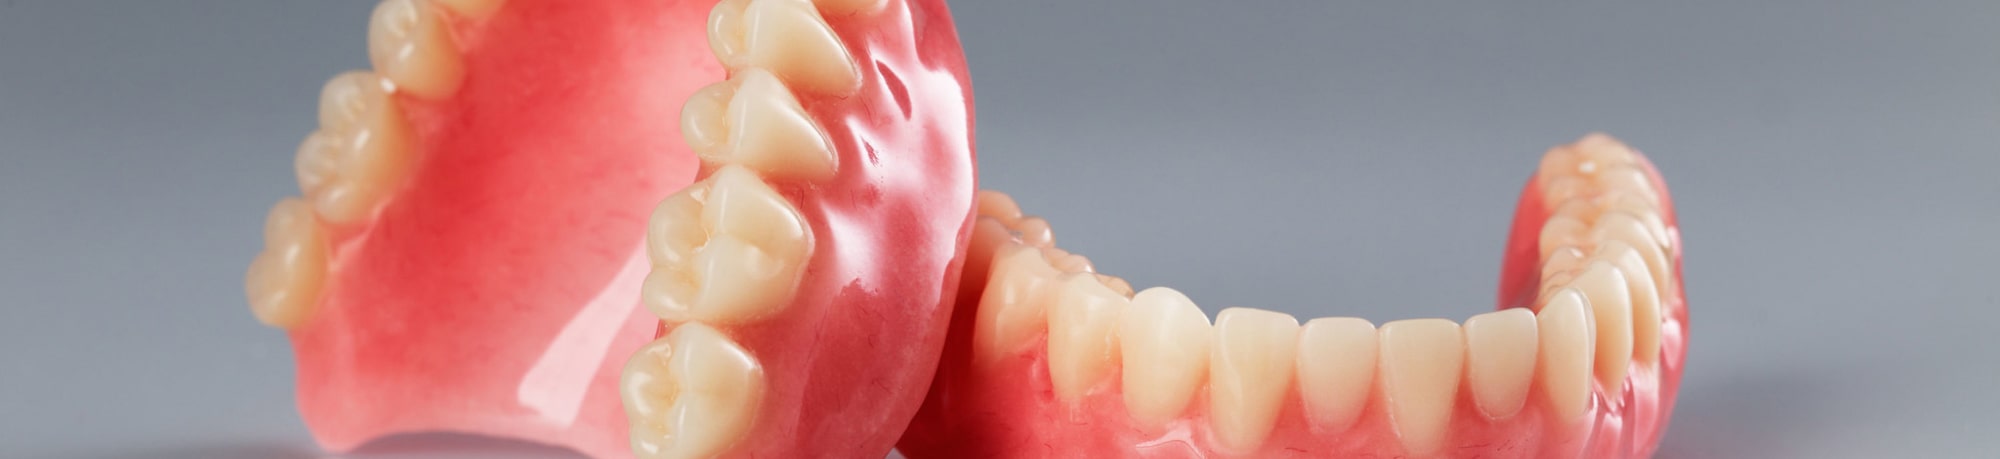 Съёмные зубные протезы: особенности выбора и ухода